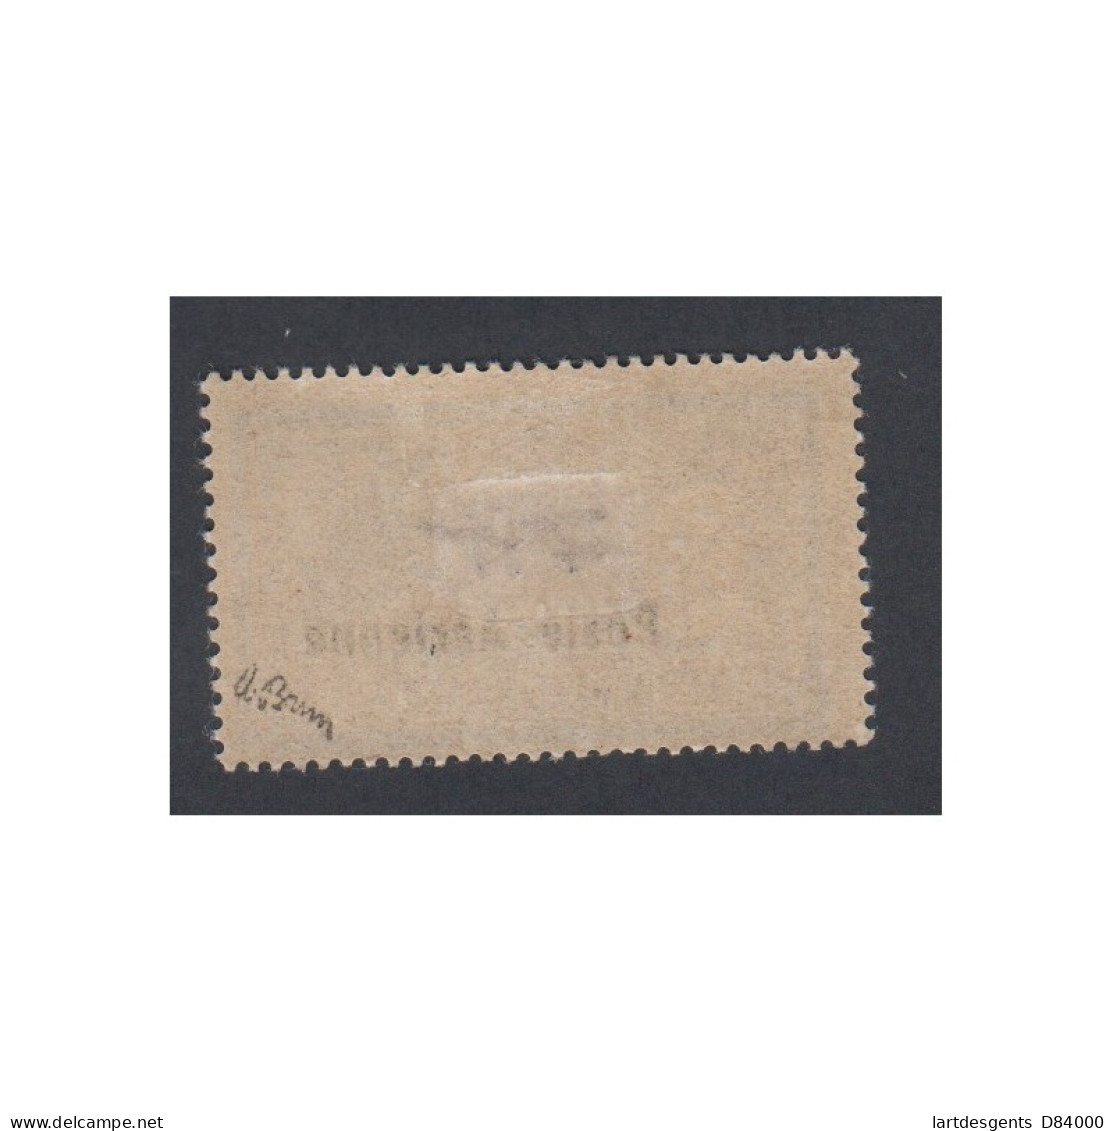 Timbre Poste Aérienne - Timbre N°2 - 1927 - Neuf* Avec Charnière Signé Brun - Cote 250 Euros- Lartdesgents - 1927-1959 Mint/hinged